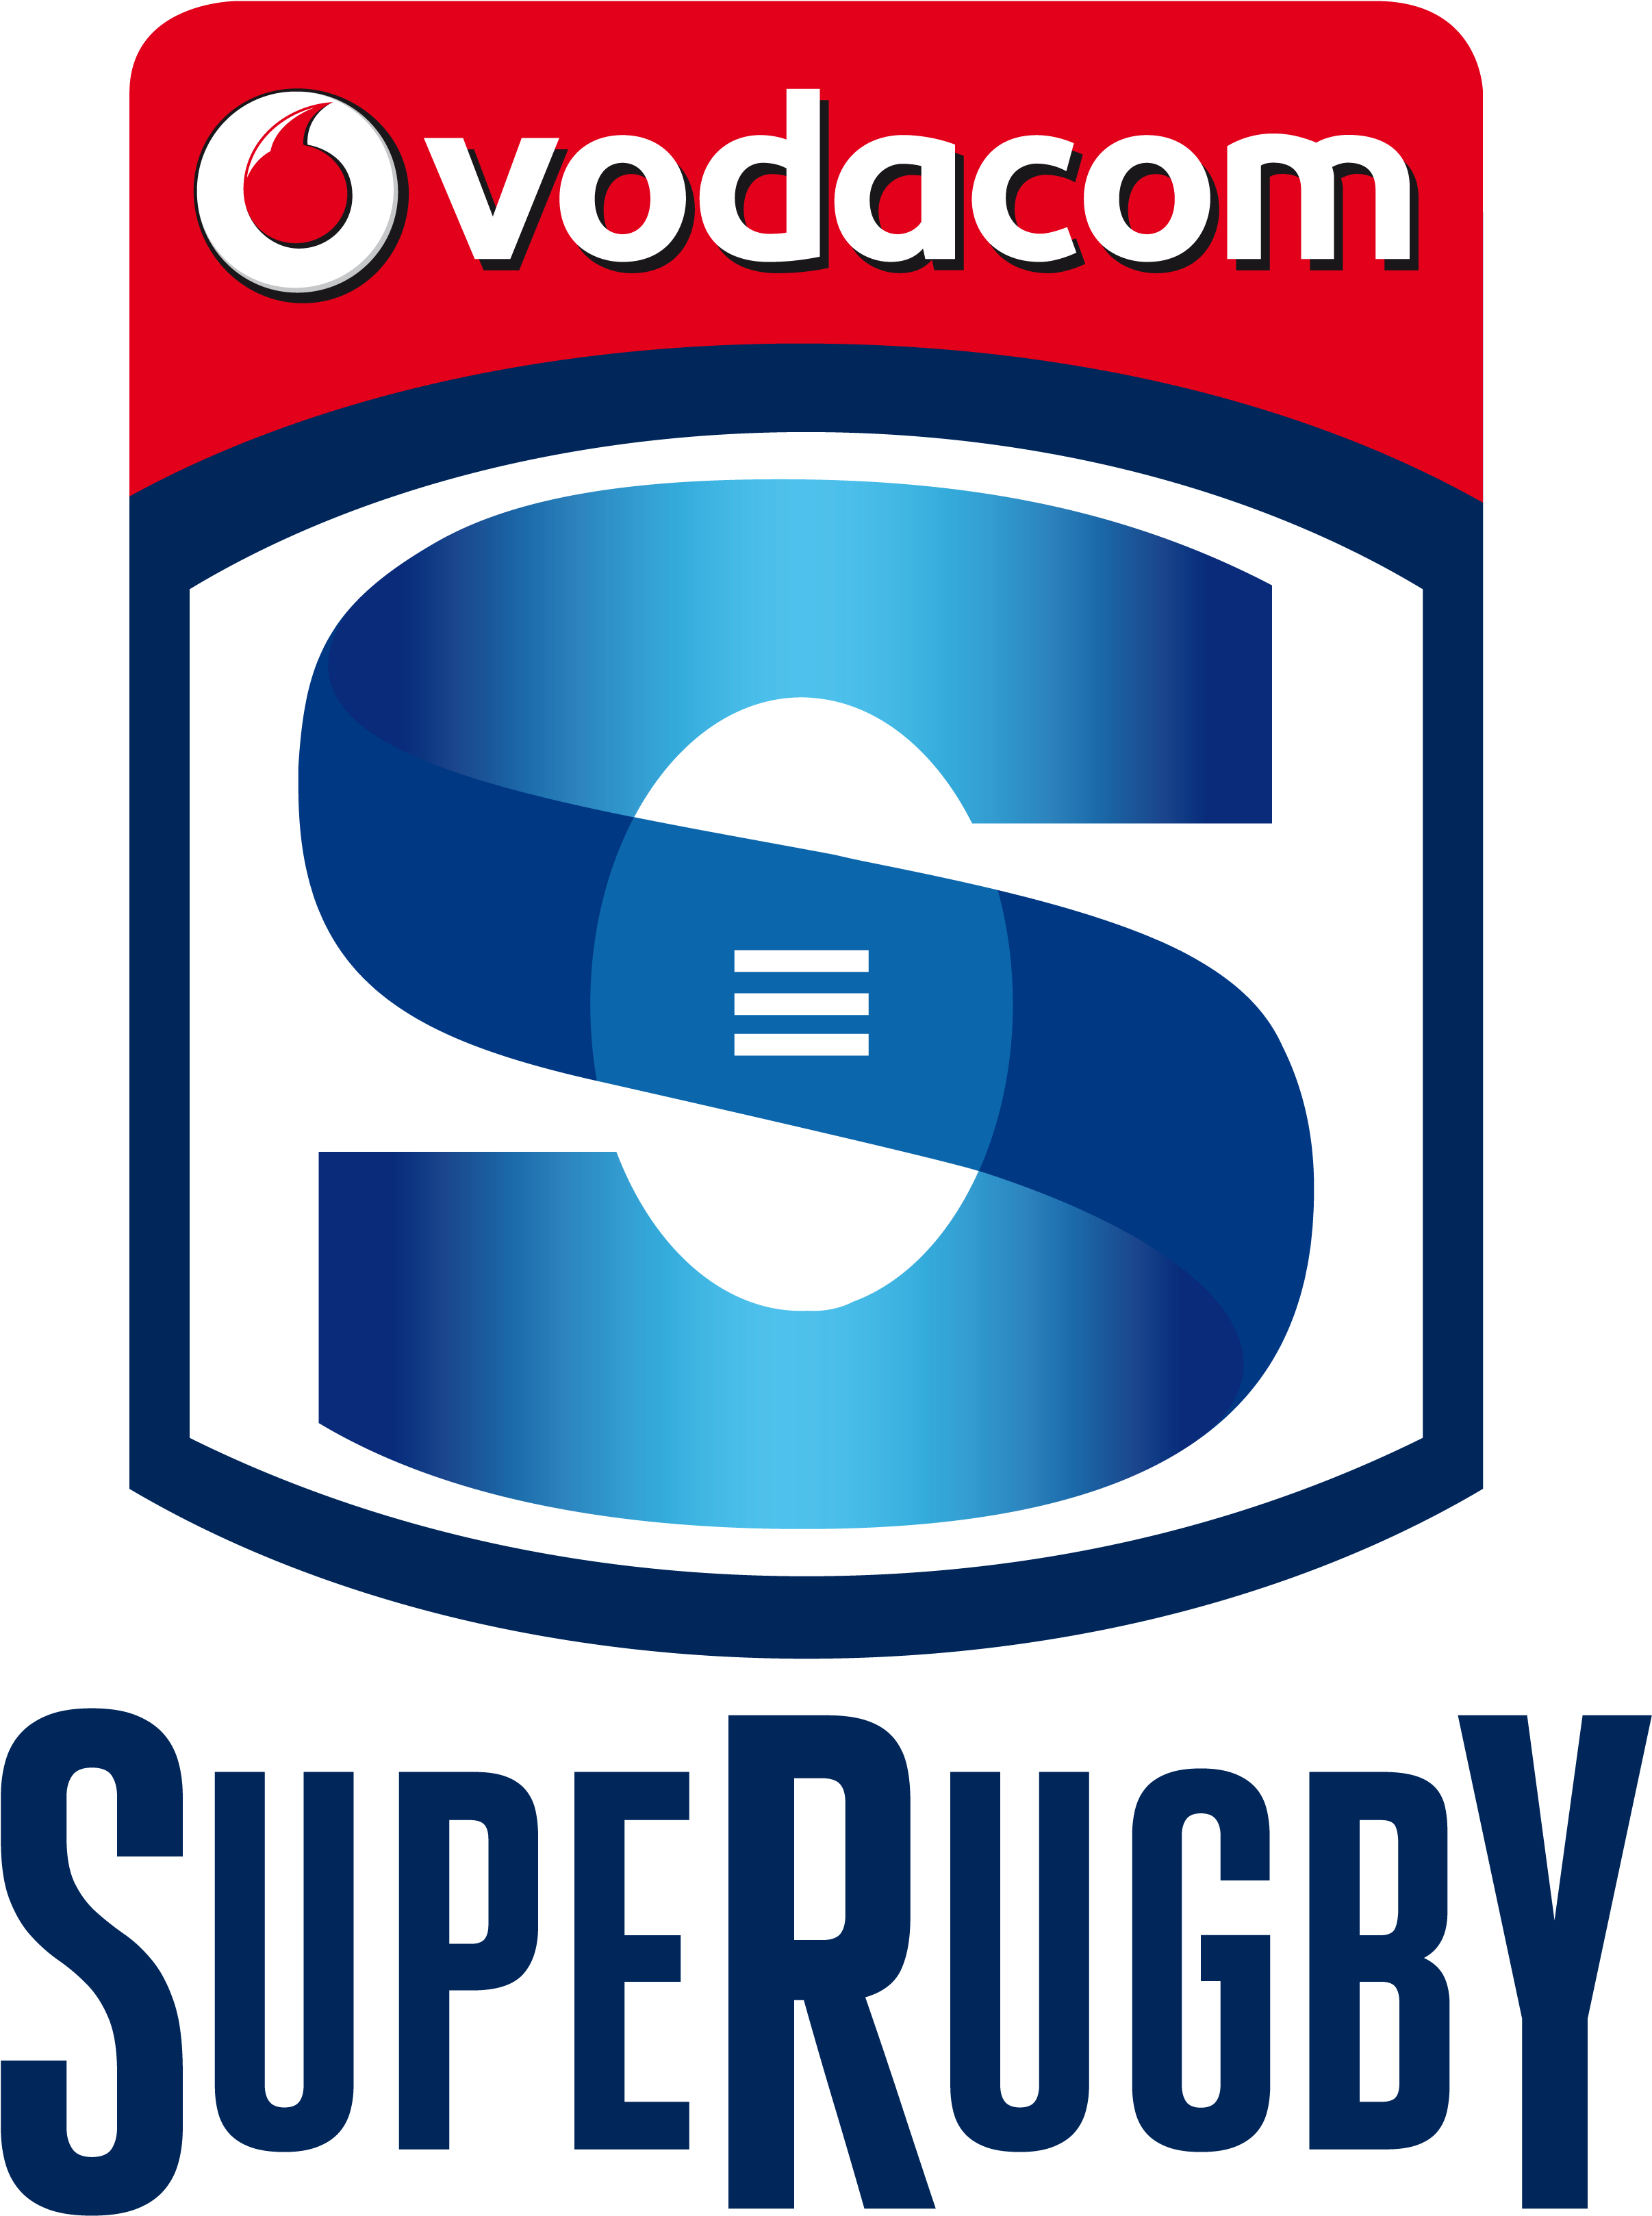 Vodacom Superugby Logo - Vodacom Super Rugby Logo (2760x3625), Png Download